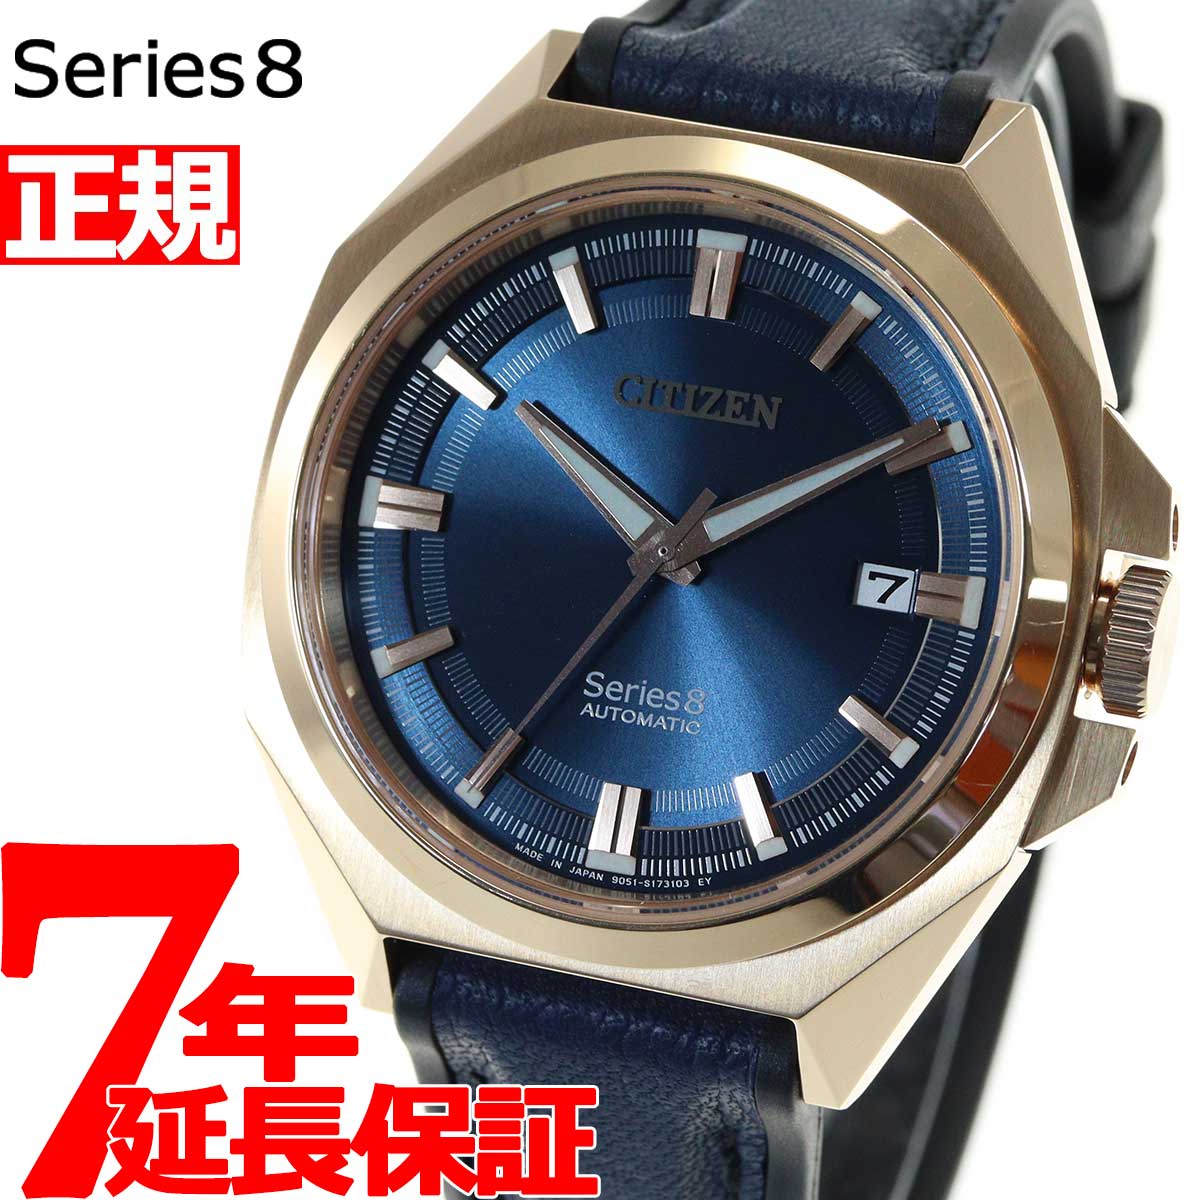 シチズン シリーズエイト CITIZEN Series 8 メカニカル 831 自動巻き 機械式 腕時計 メンズ NB6012-18L